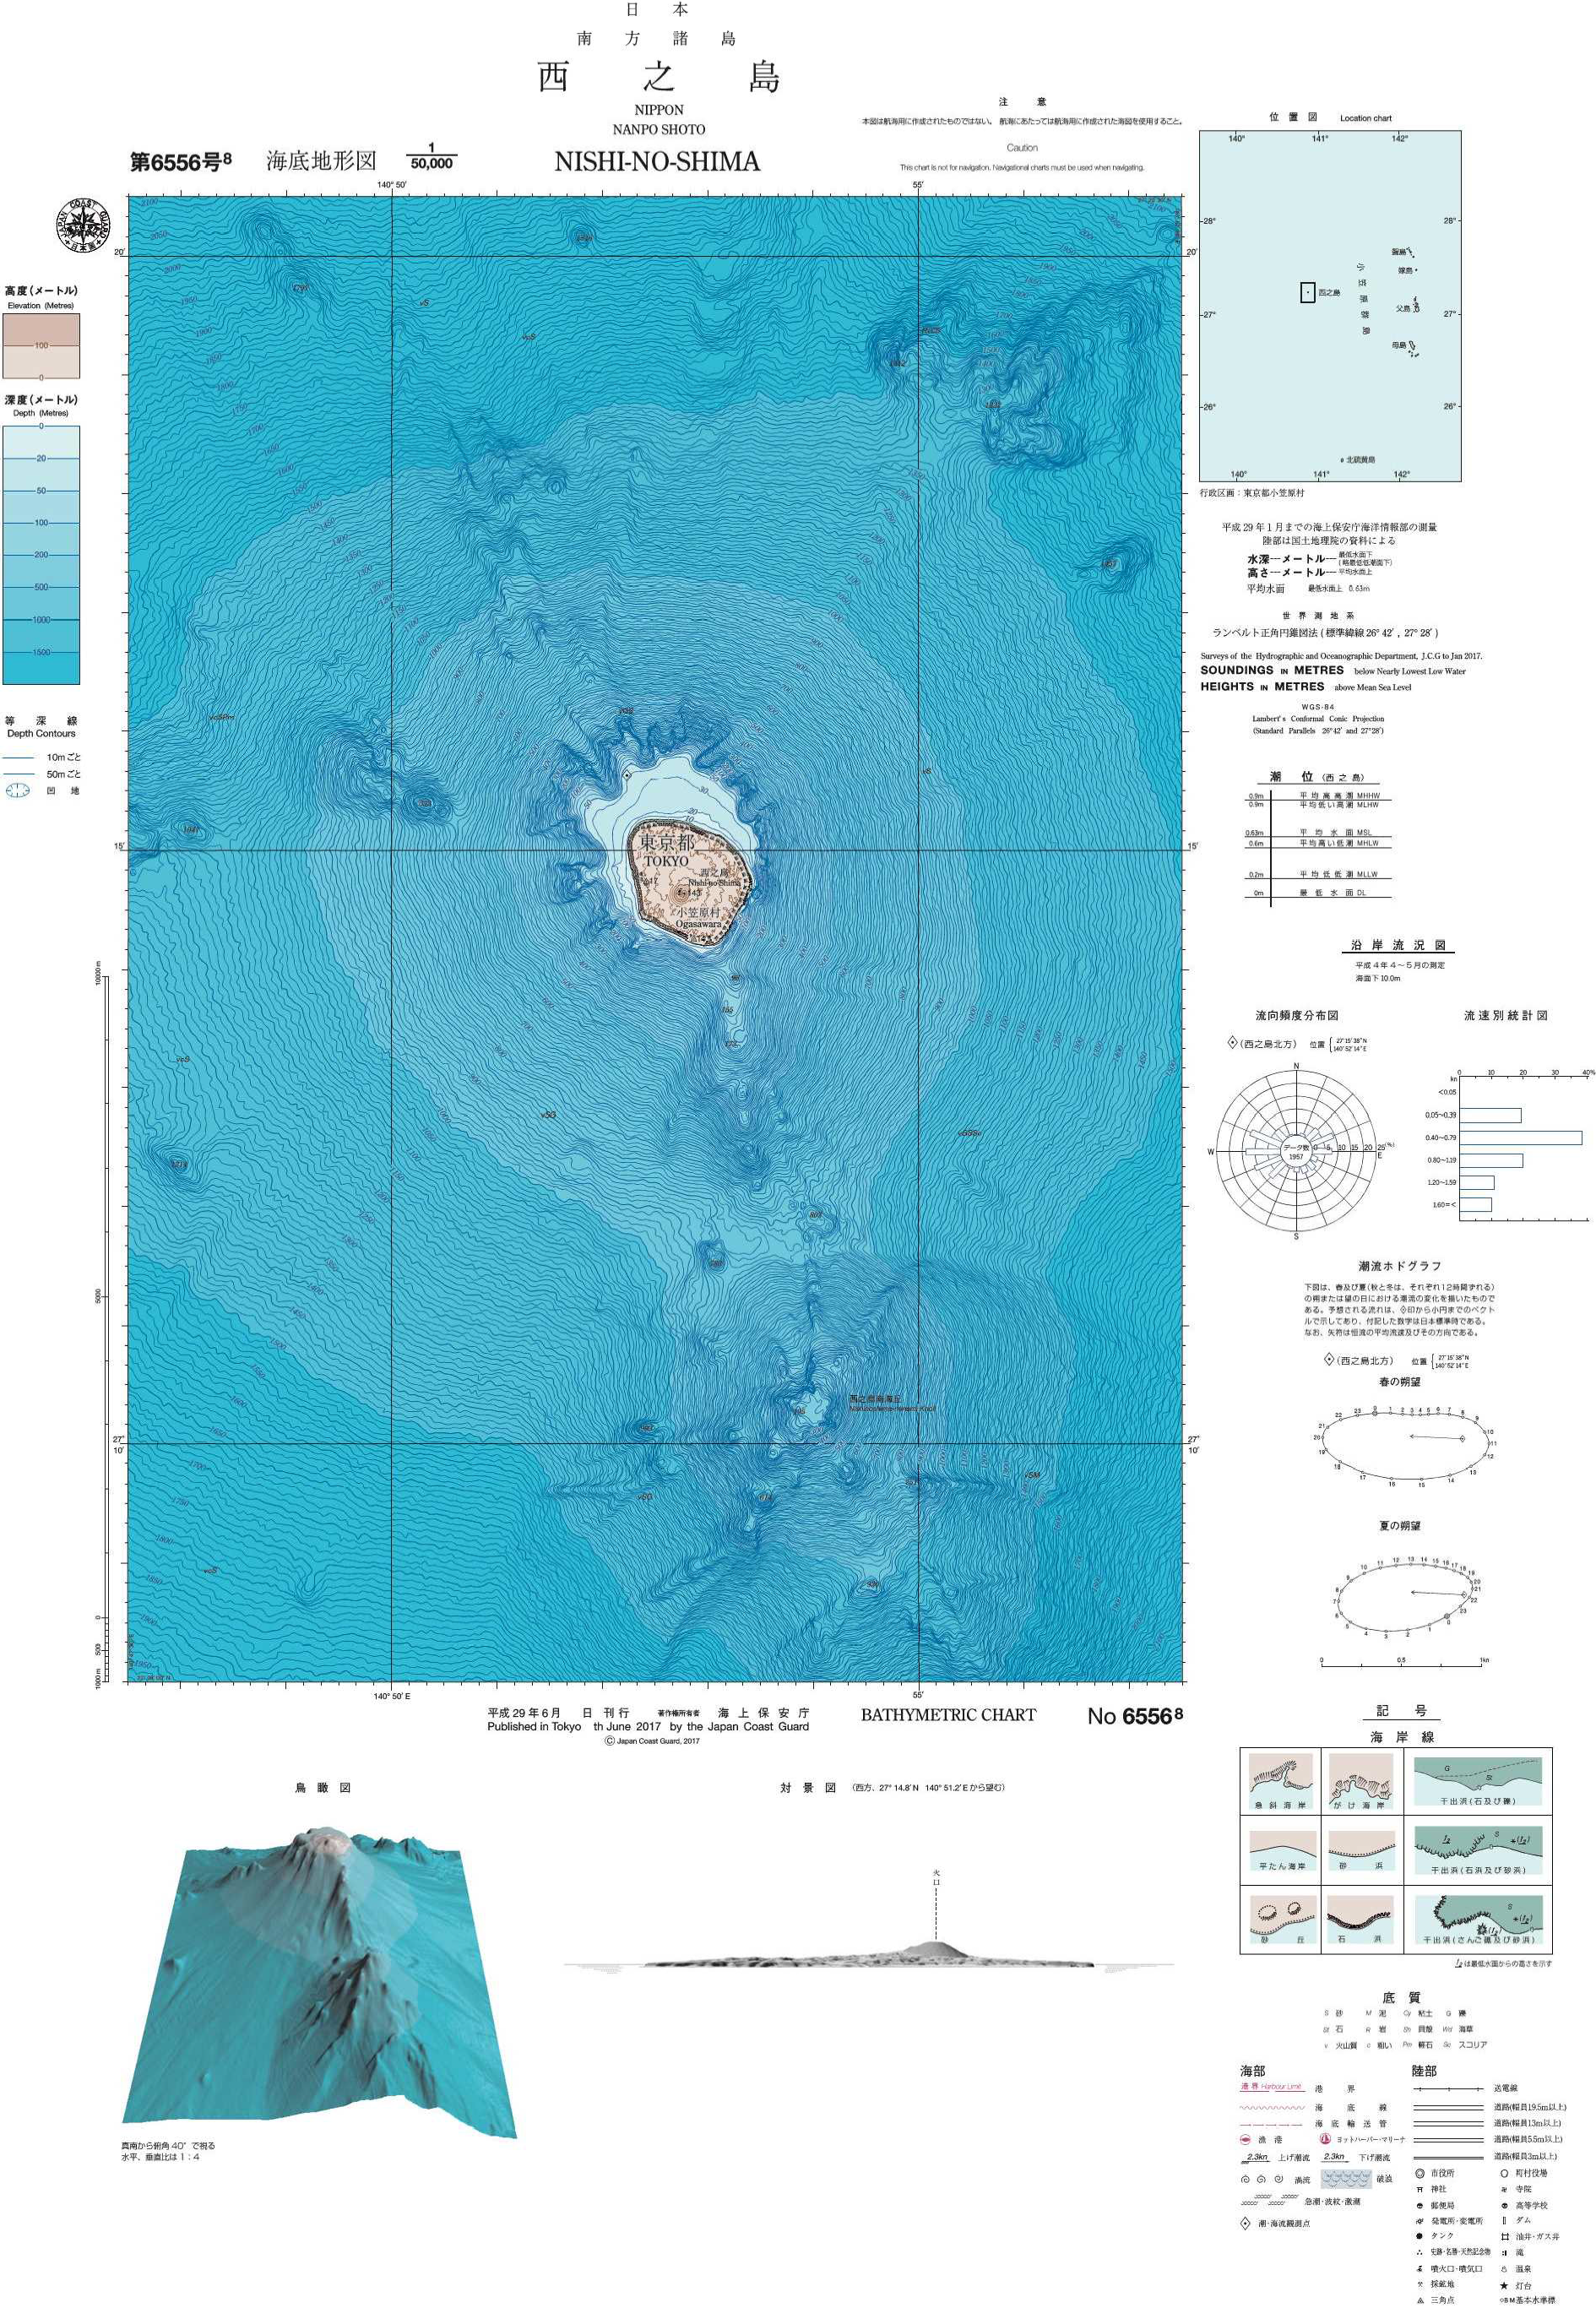 最新の測量機器を用いて作製された海底地形図は、火山島である 西之島 周辺の起伏に富んだ海底地形の状況を詳細に描いています